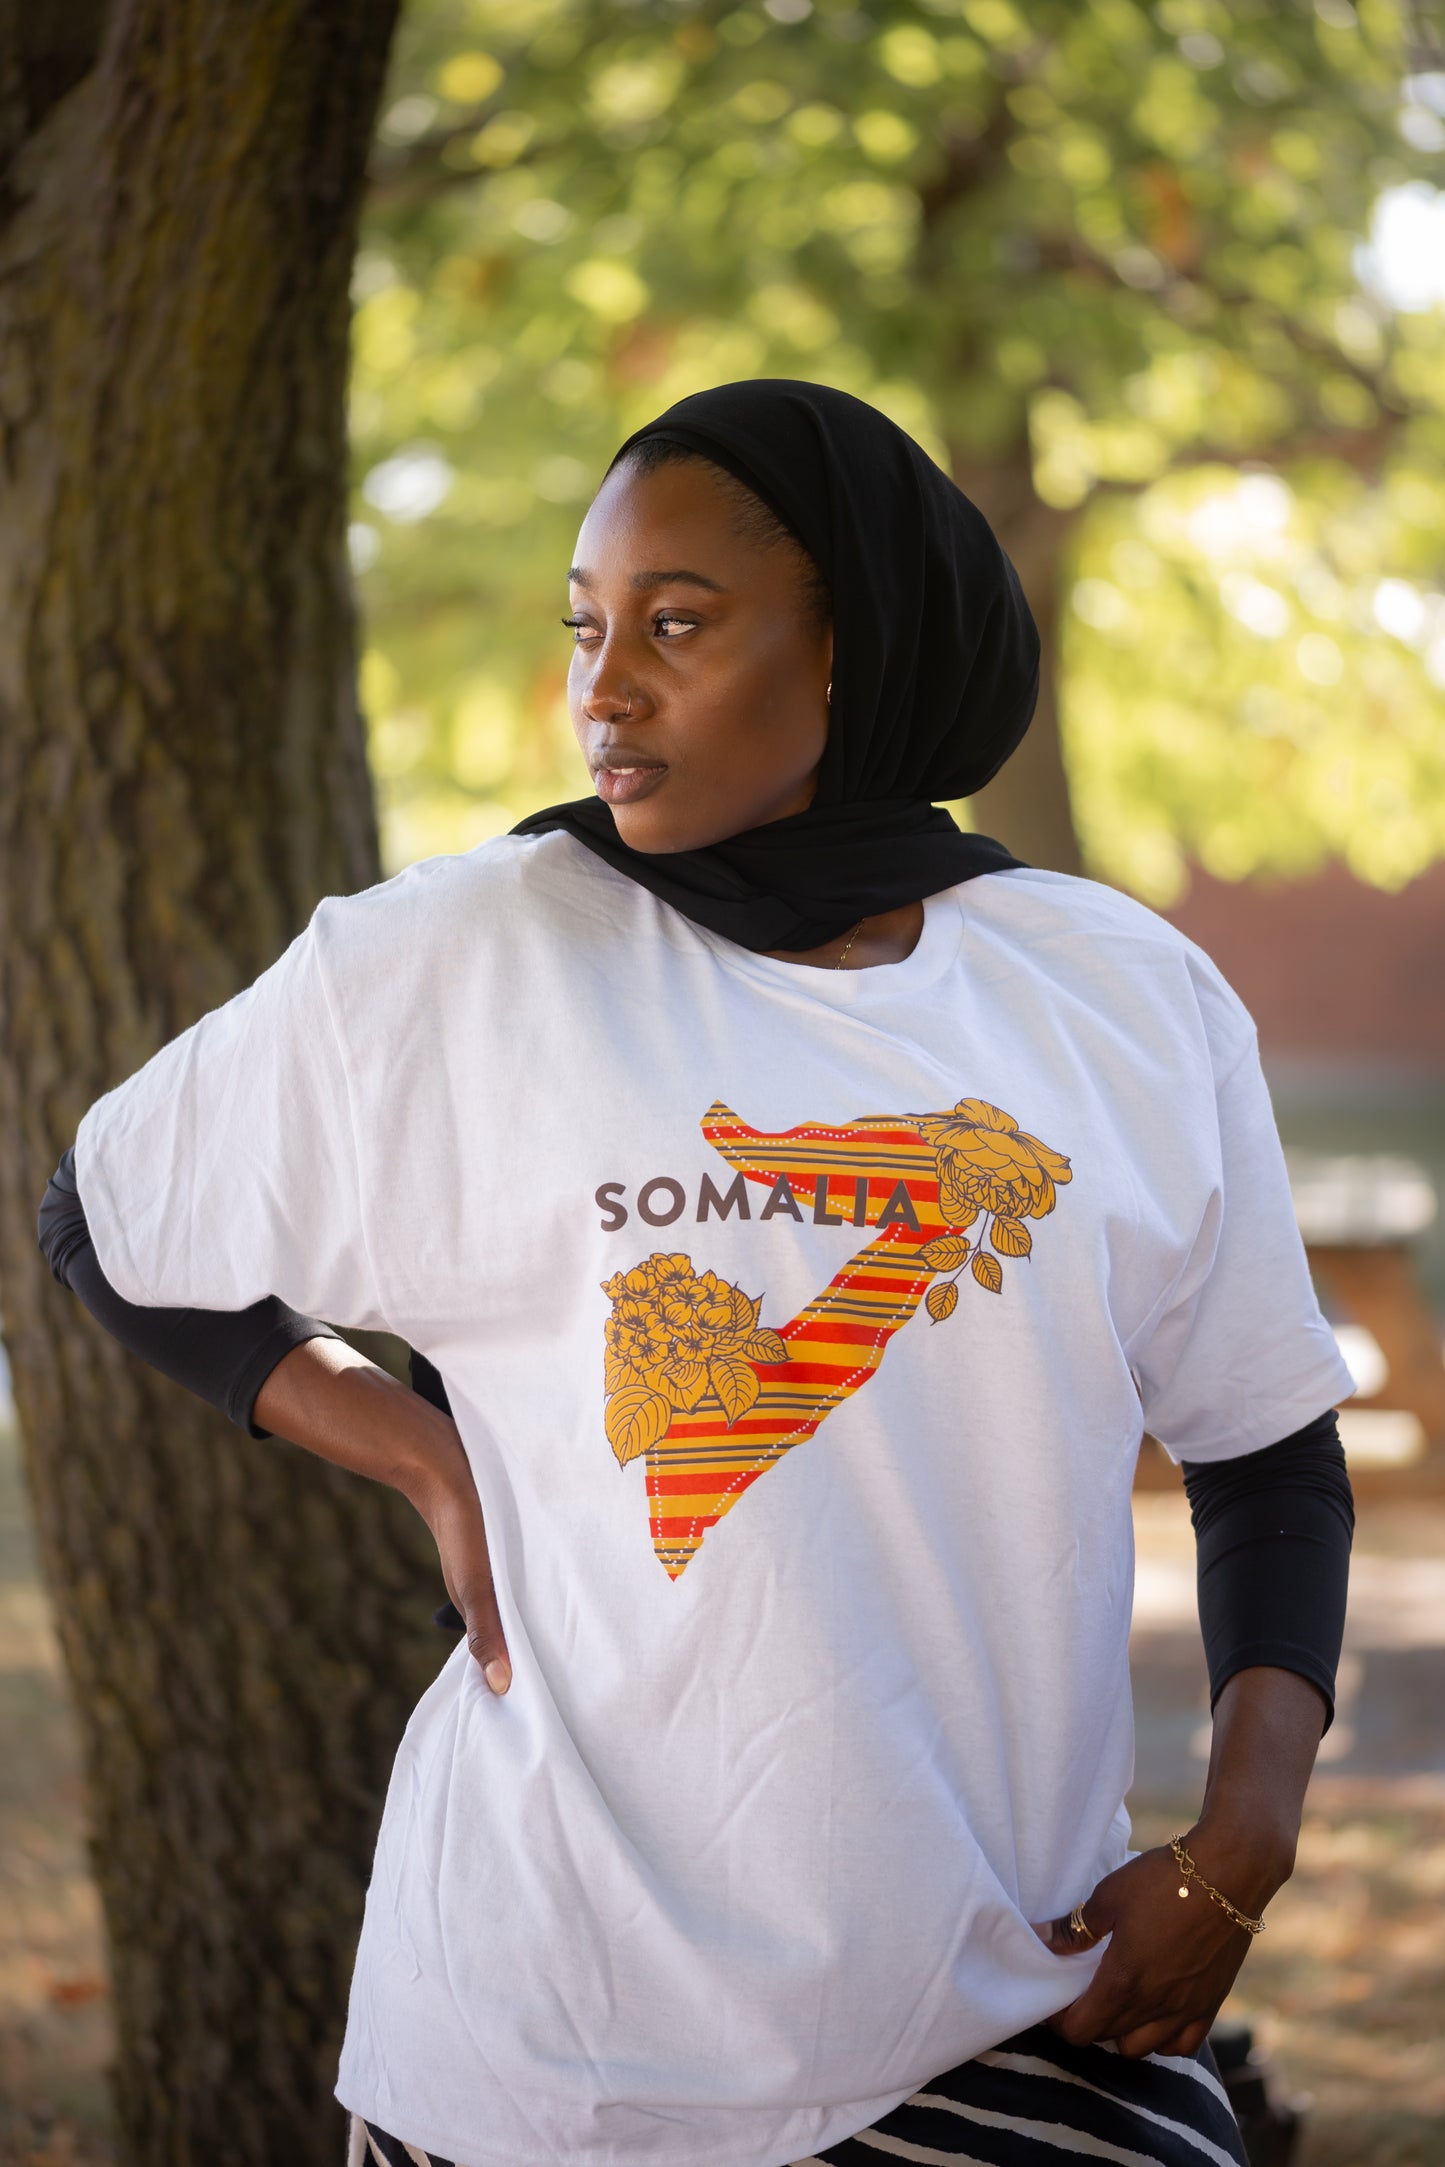 Somalia Map T-shirt